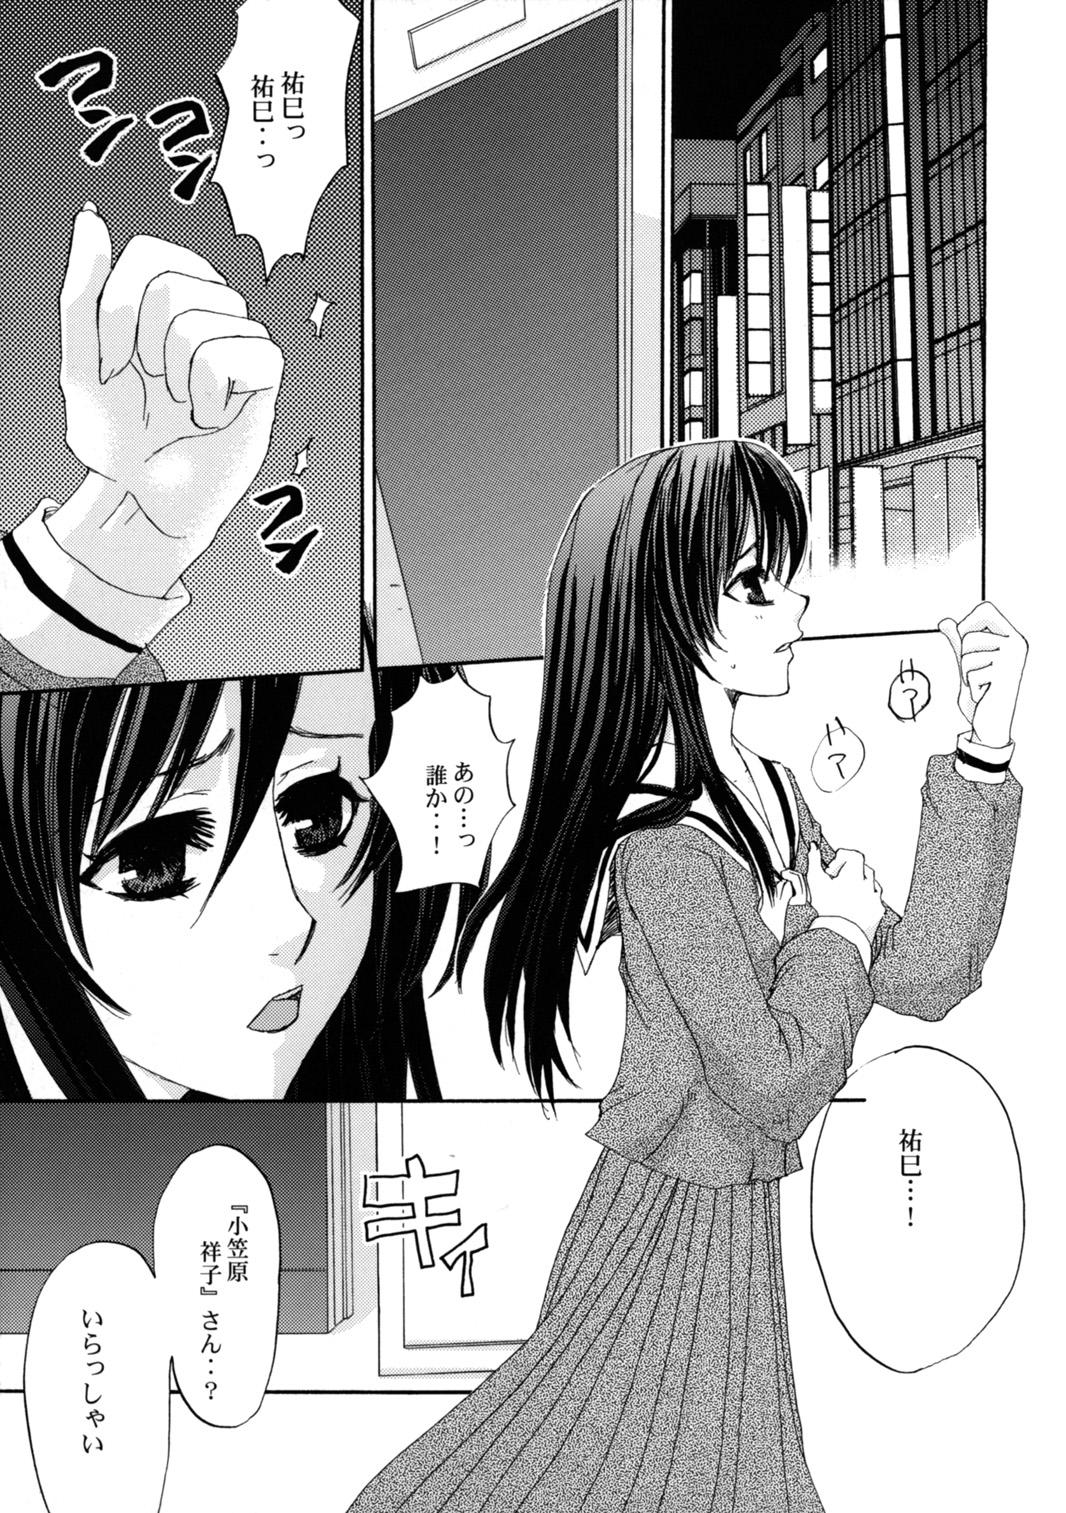 Fucks Himitsu no Hanazono - Maria sama ga miteru Youporn - Page 4